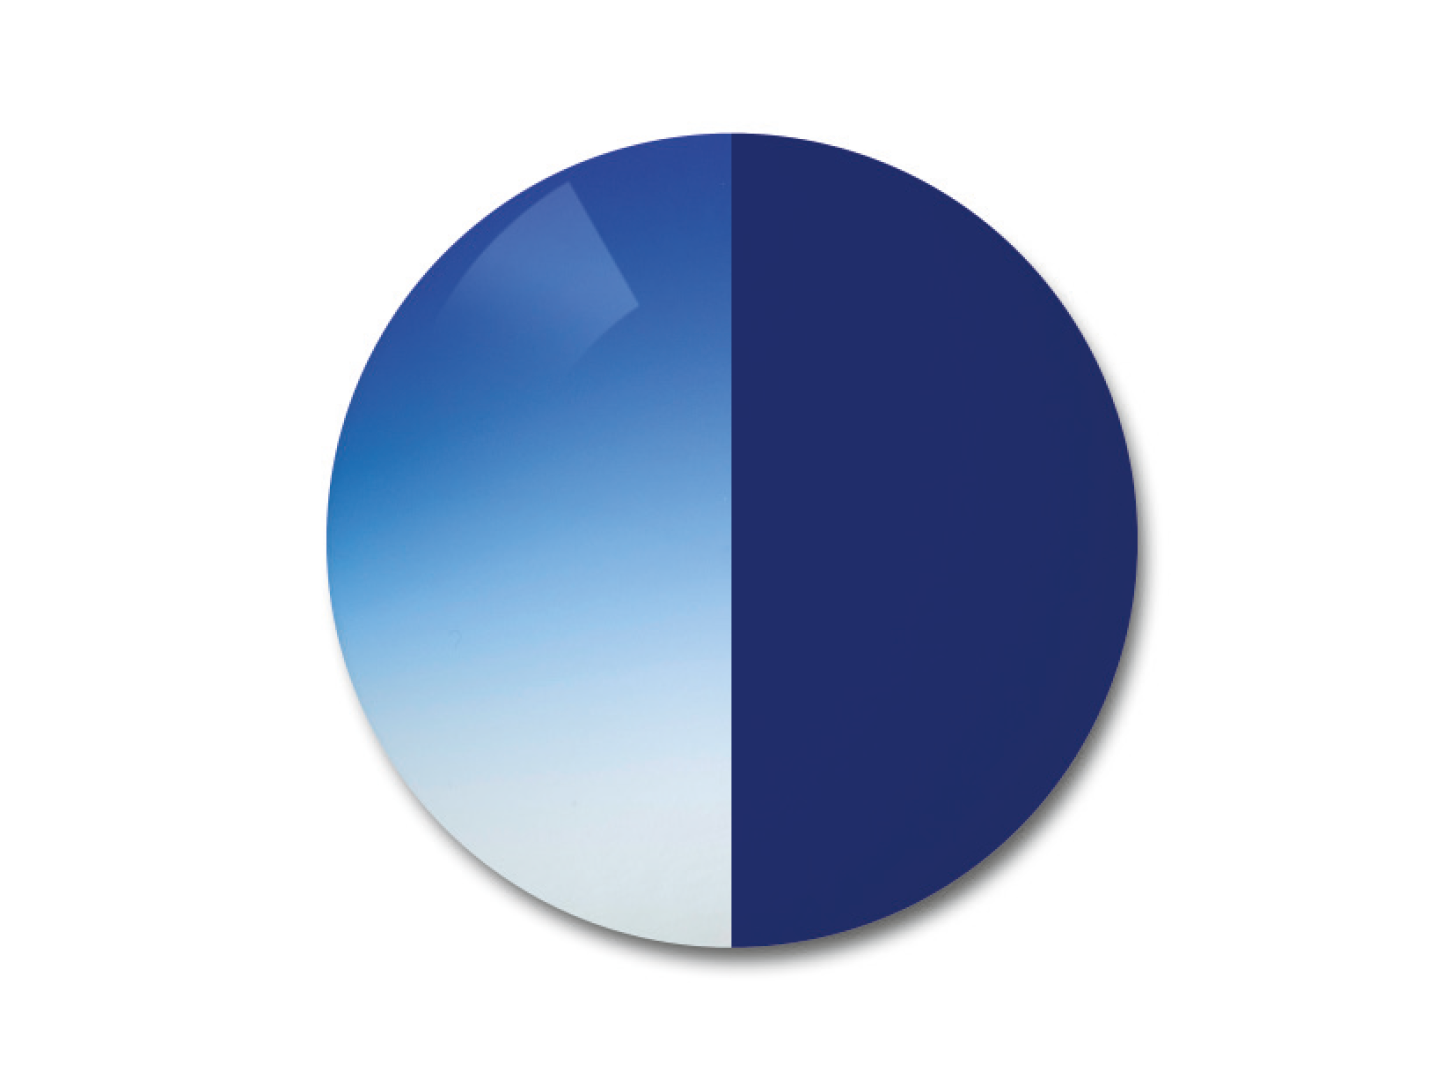 자이스 어댑티브선 변색 렌즈 중 그라데이션 블루 색상을 보여주는 이미지 